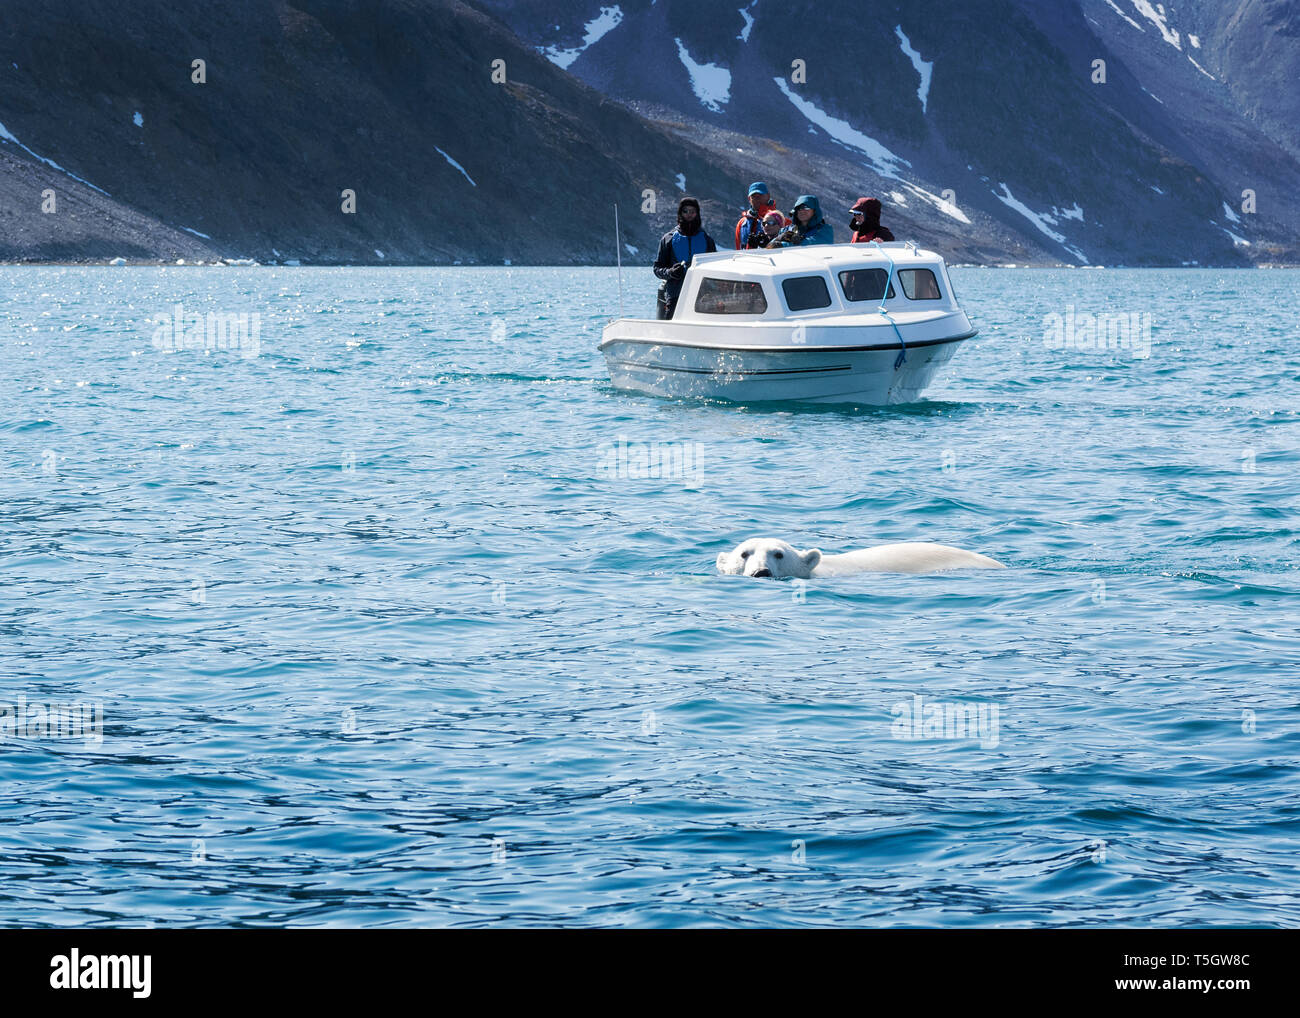 Grönland, Sermersooq, Kulusuk, Ikateq Fjord, die Menschen auf dem Boot beobachten Eisbären Stockfoto